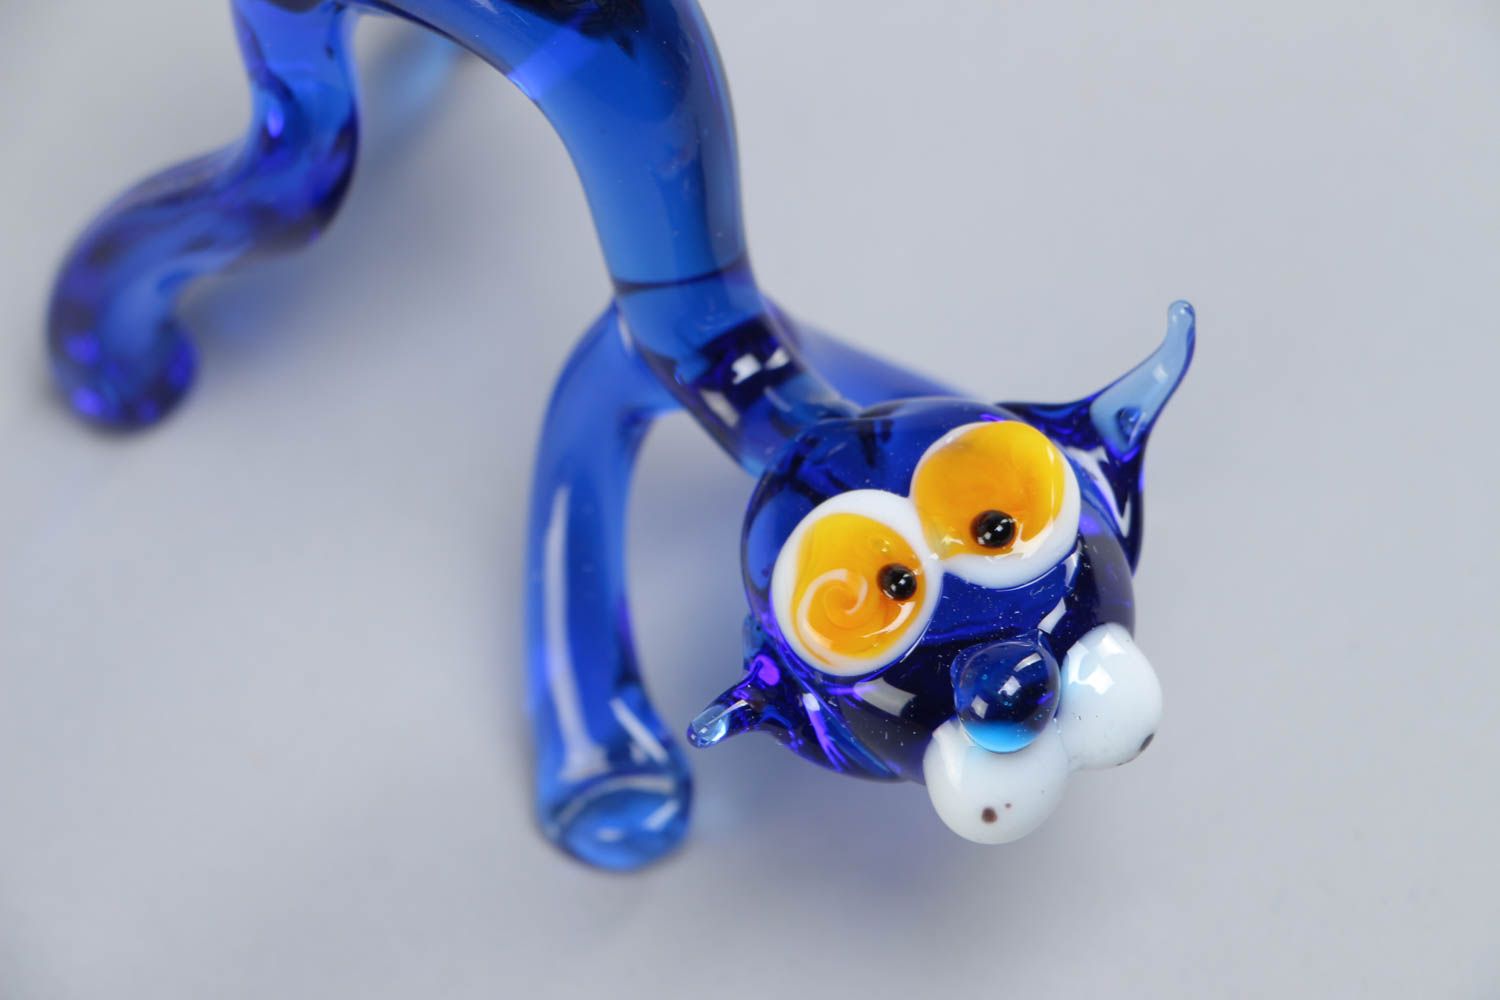 Статуэтка из стекла лэмпворк ручной работы миниатюрная для настольного декора Синий кот  фото 3